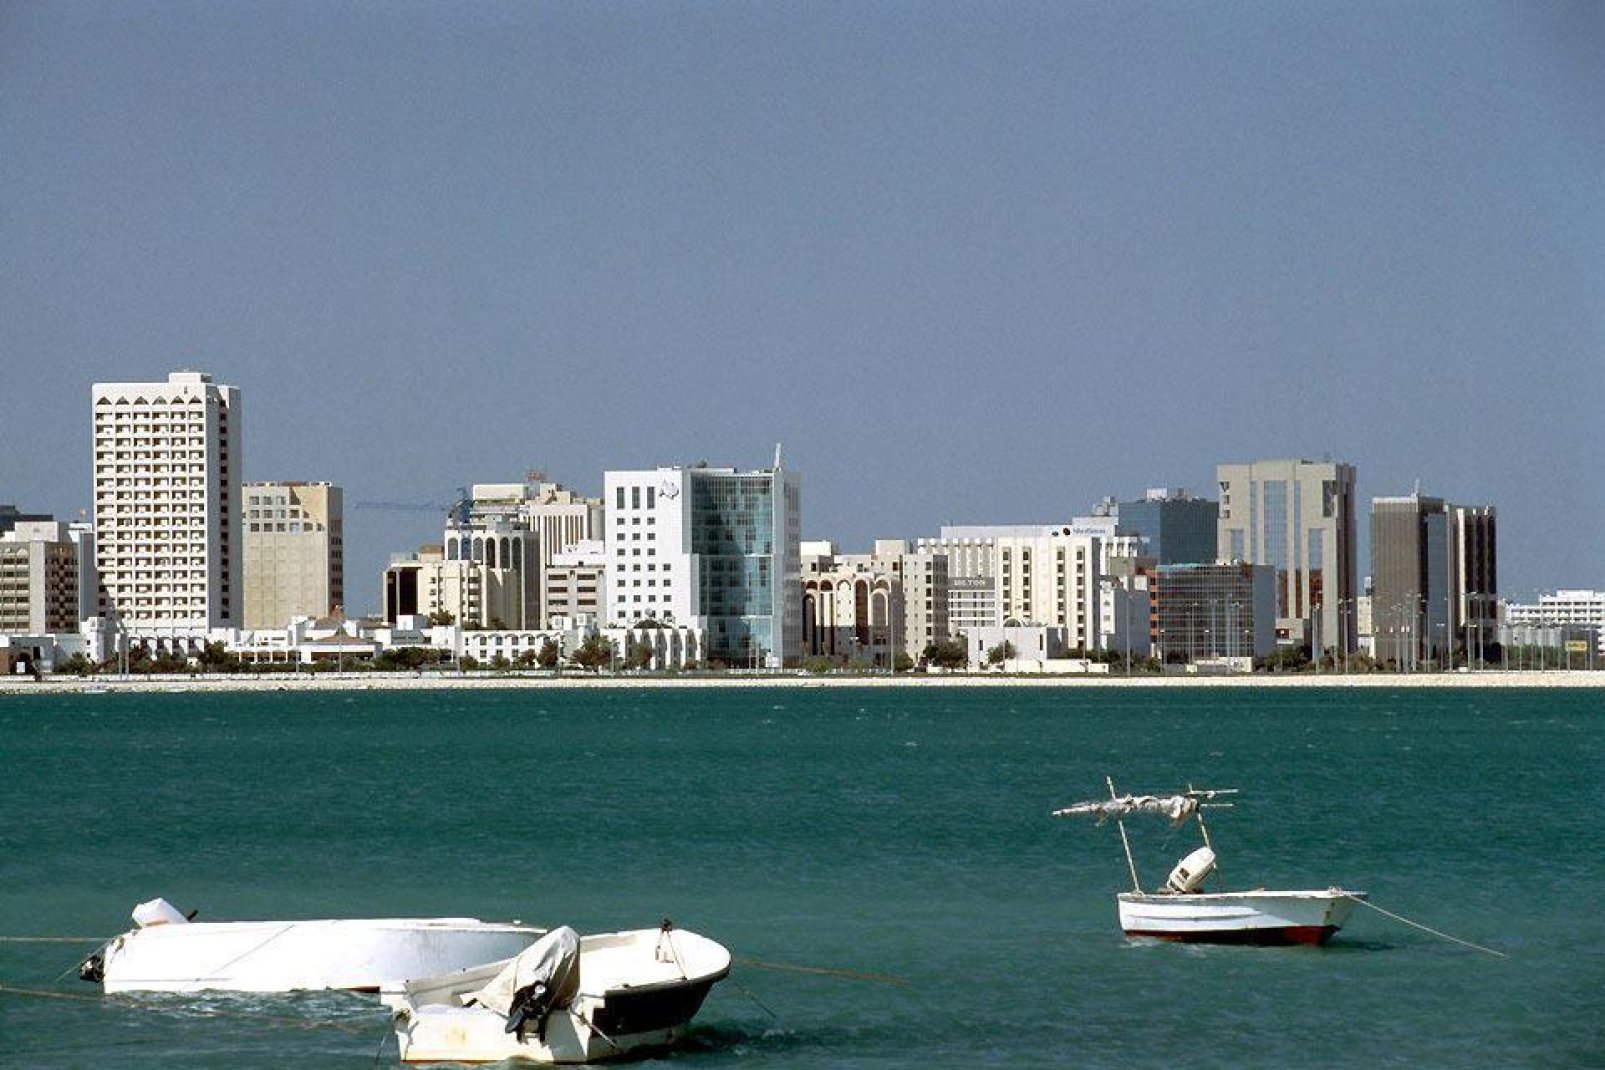 Viele Touristen kennen von Bahrain nur den bekannten Formel-1-Ring, und nur wenige wissen ber die genaue geografische Lage des Landes Bescheid. Und dennoch hat dieses kleine Knigreich (40 km lang und 15 km breit), das aus 36 Inseln im arabisch-persischen Golf besteht und ber eine 25 km lange Brcke mit Saudi-Arabien verbunden ist, sehr viel zu bieten! Bahrain ist zwar ein bekannter Wirtschaftsstandort ...